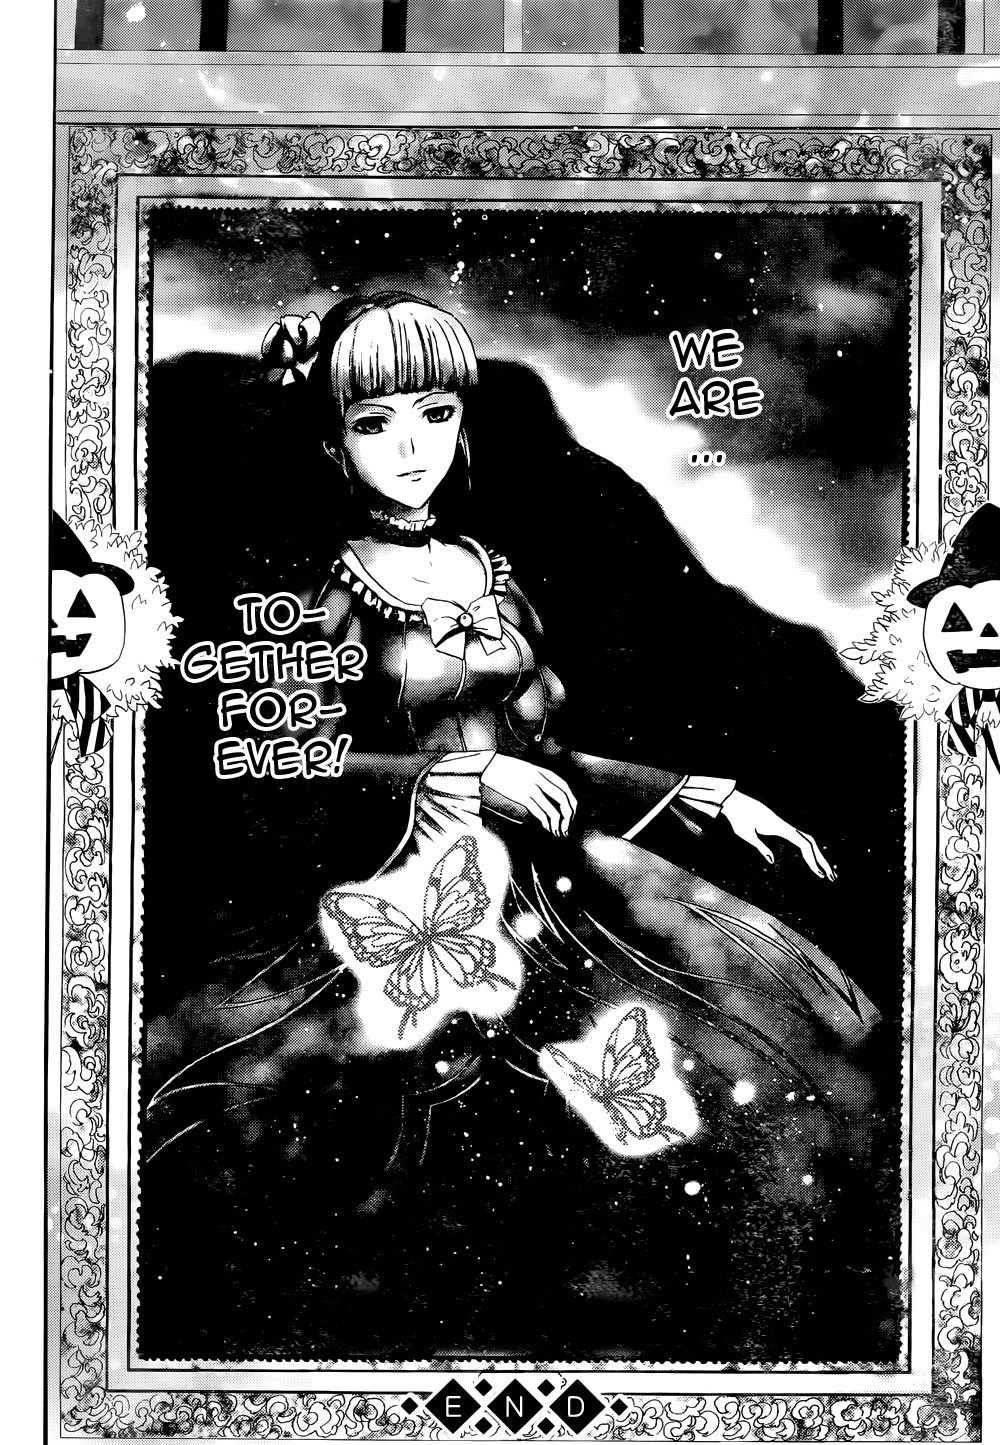 Umineko no Naku Koro ni Chiru Episode 8: Twilight of the Golden Witch Vol.8 Ch.38